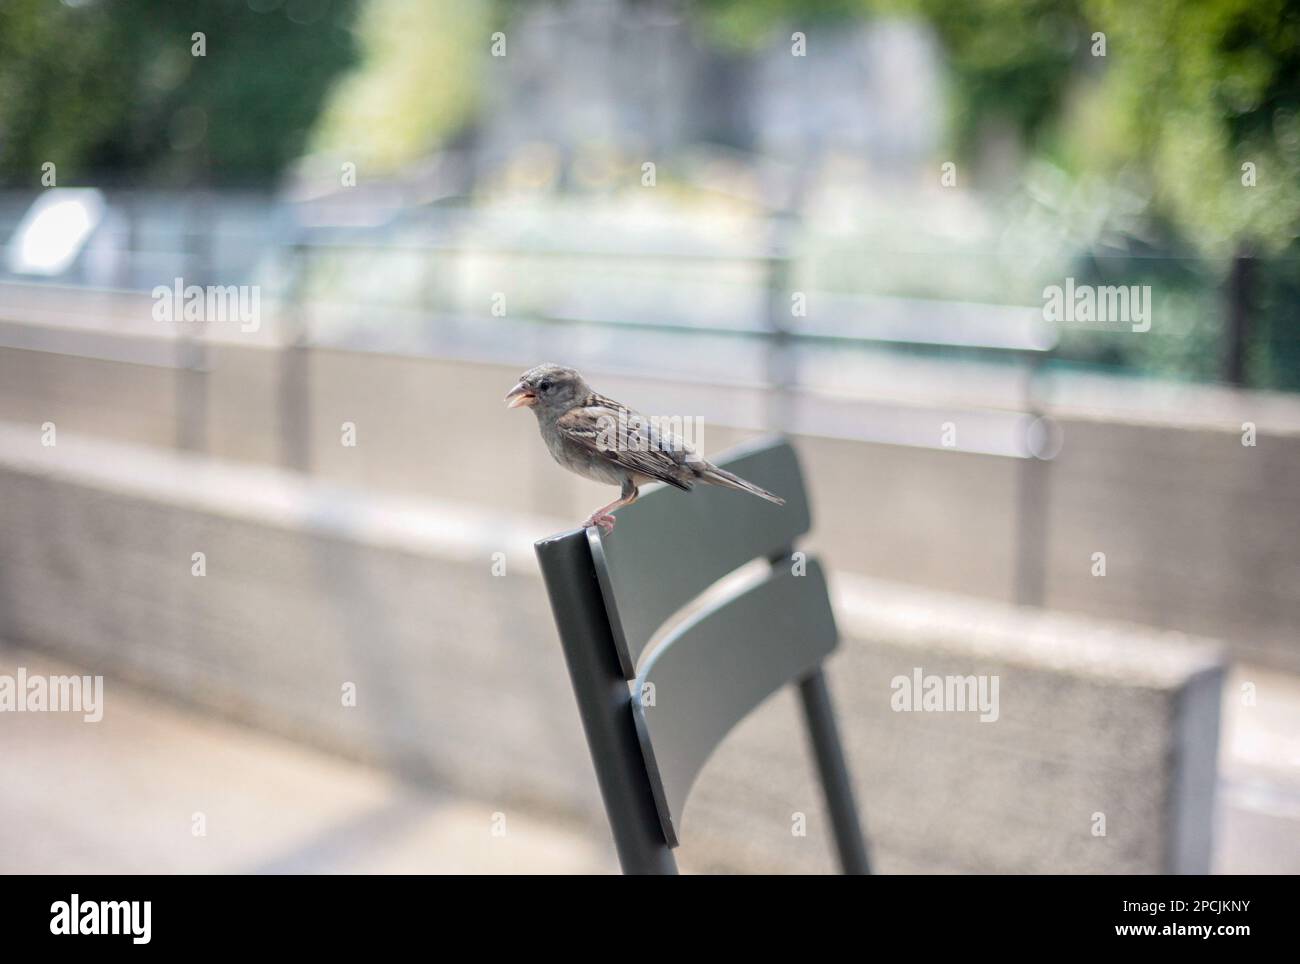 Petit oiseau assis sur une chaise Photo Stock - Alamy